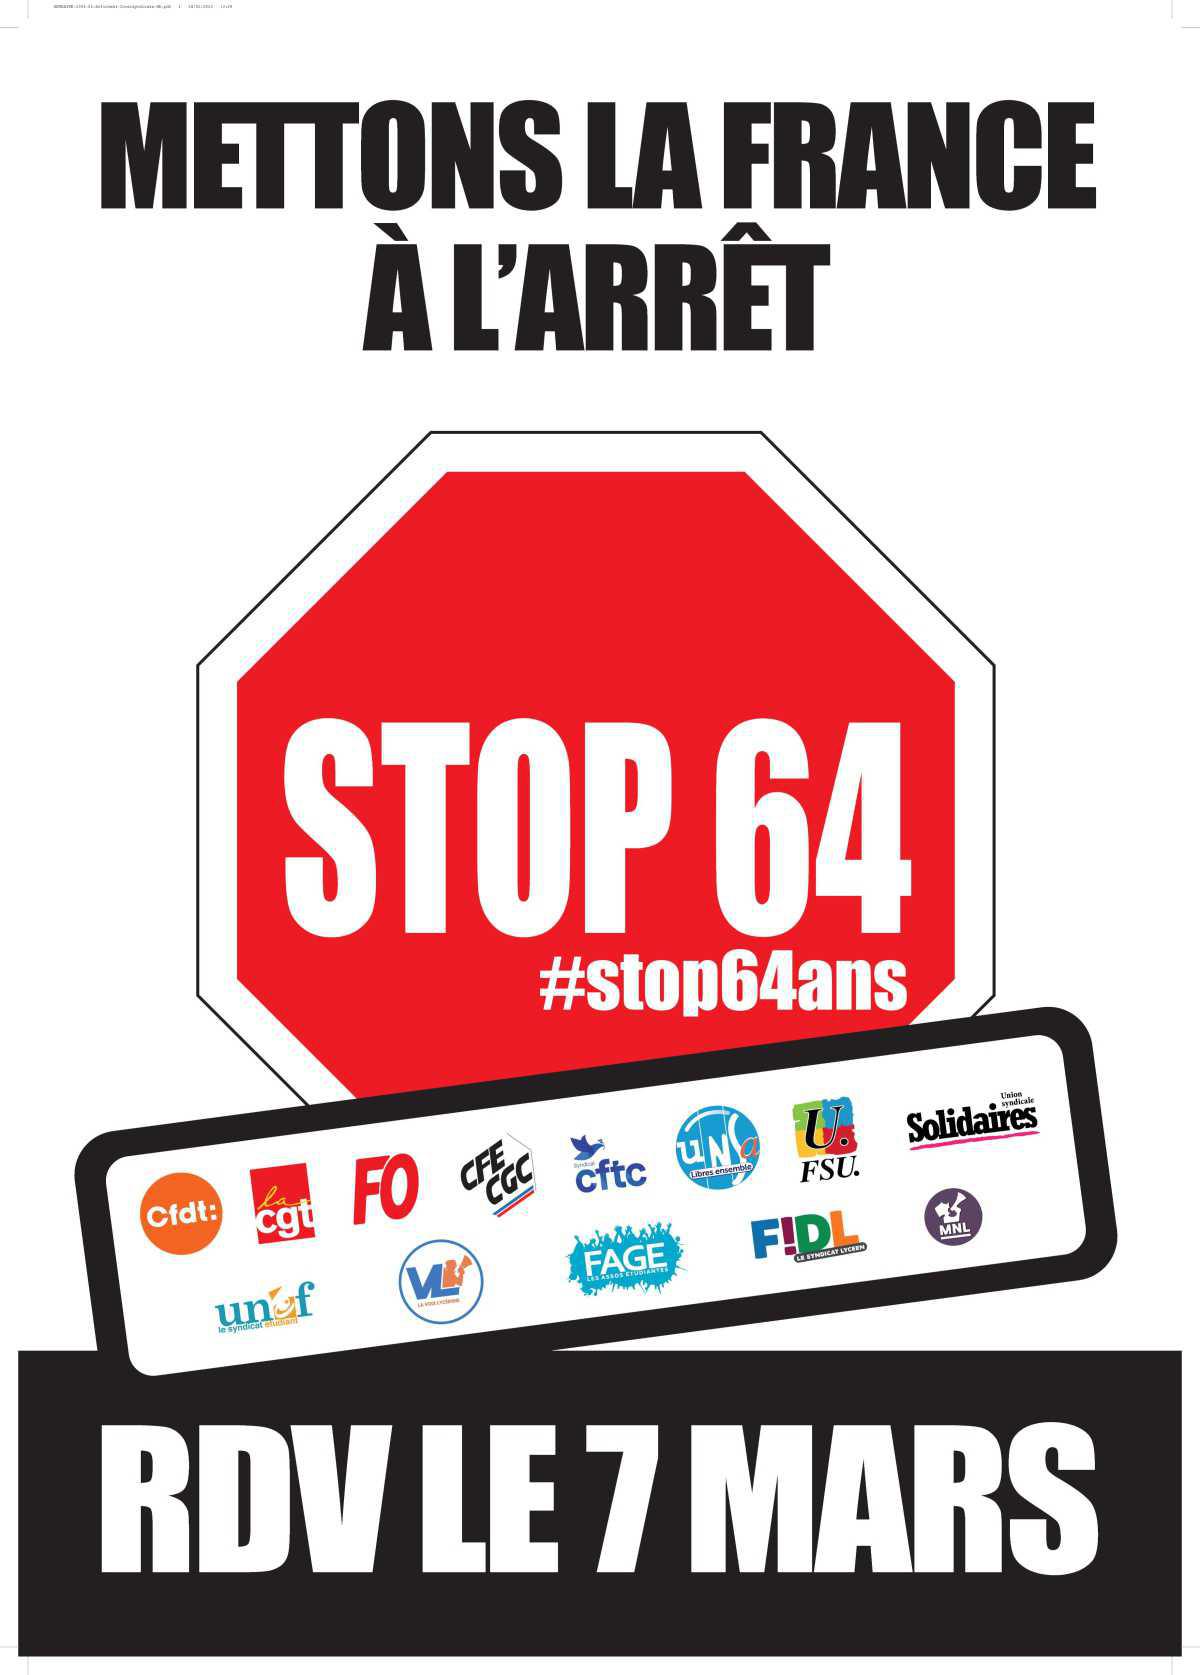 Réforme des retraites : mettons la France à l'arrêt ! #stop64ans